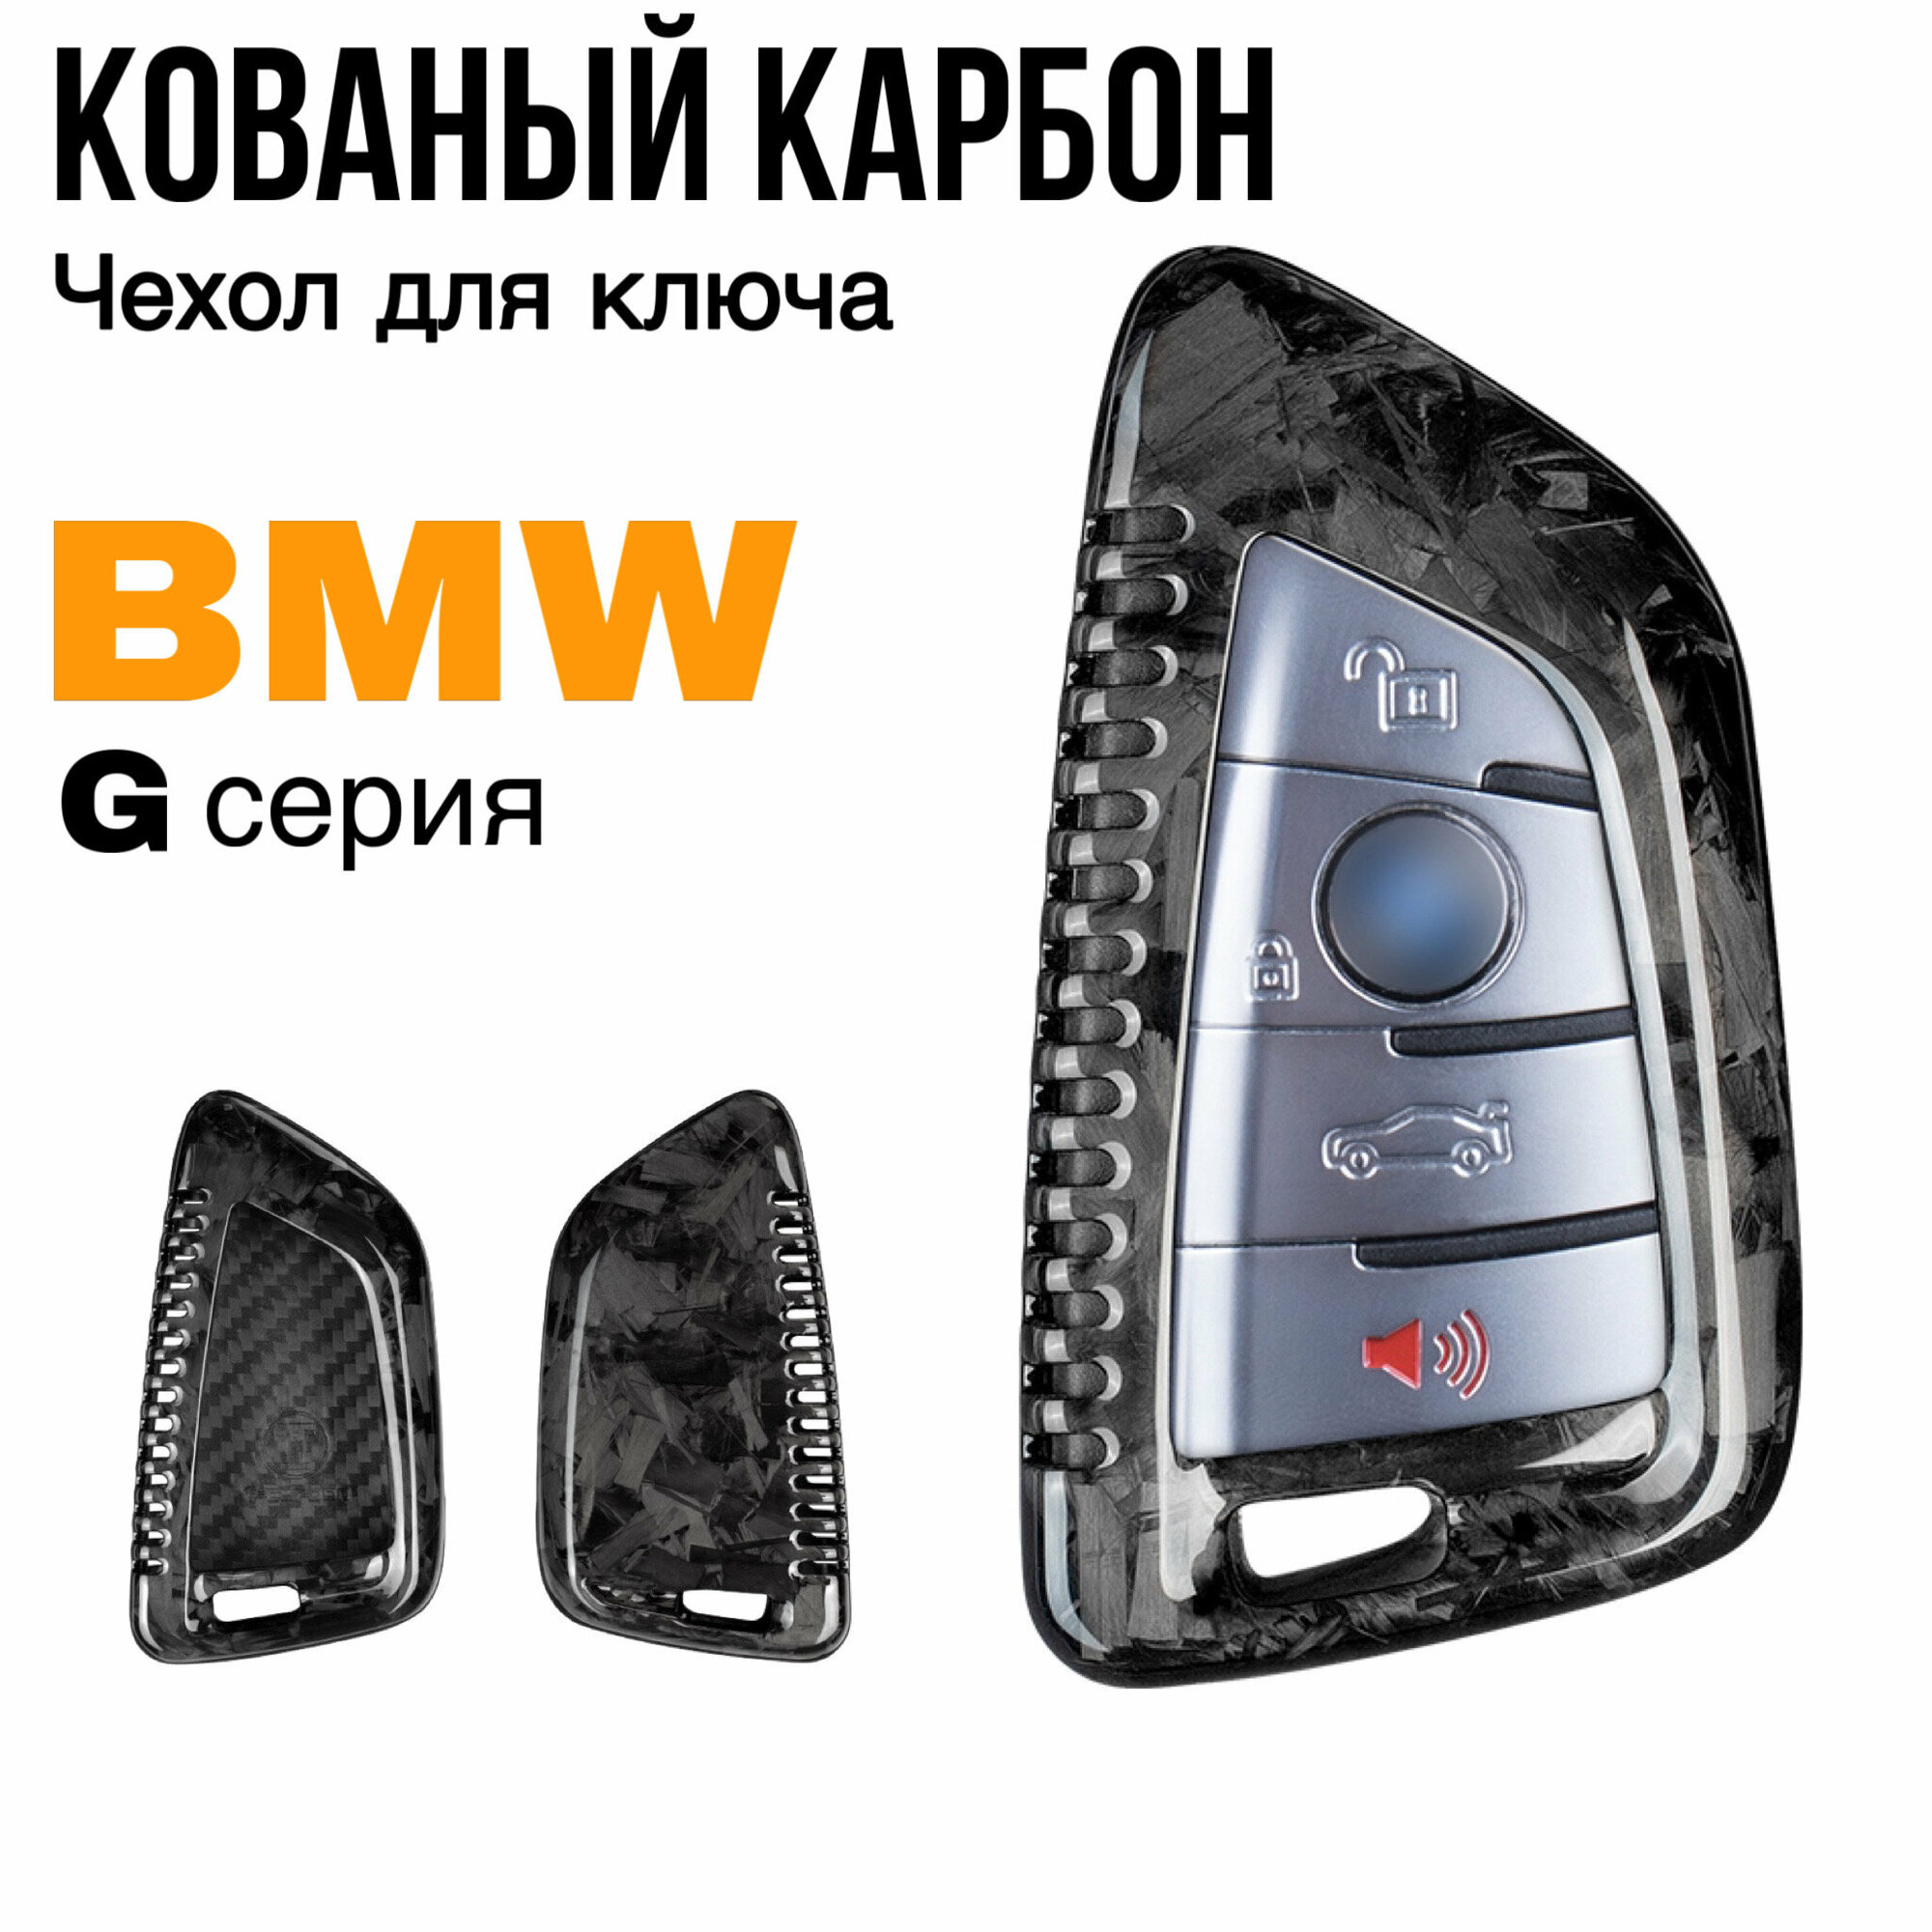 Чехол для ключа BMW G серии кованый карбон / Чехол на ключ БМВ G01 G02 G05 G06 G07 G20 G30 G11 G14/G15/G16 F15 F85 F16 F86